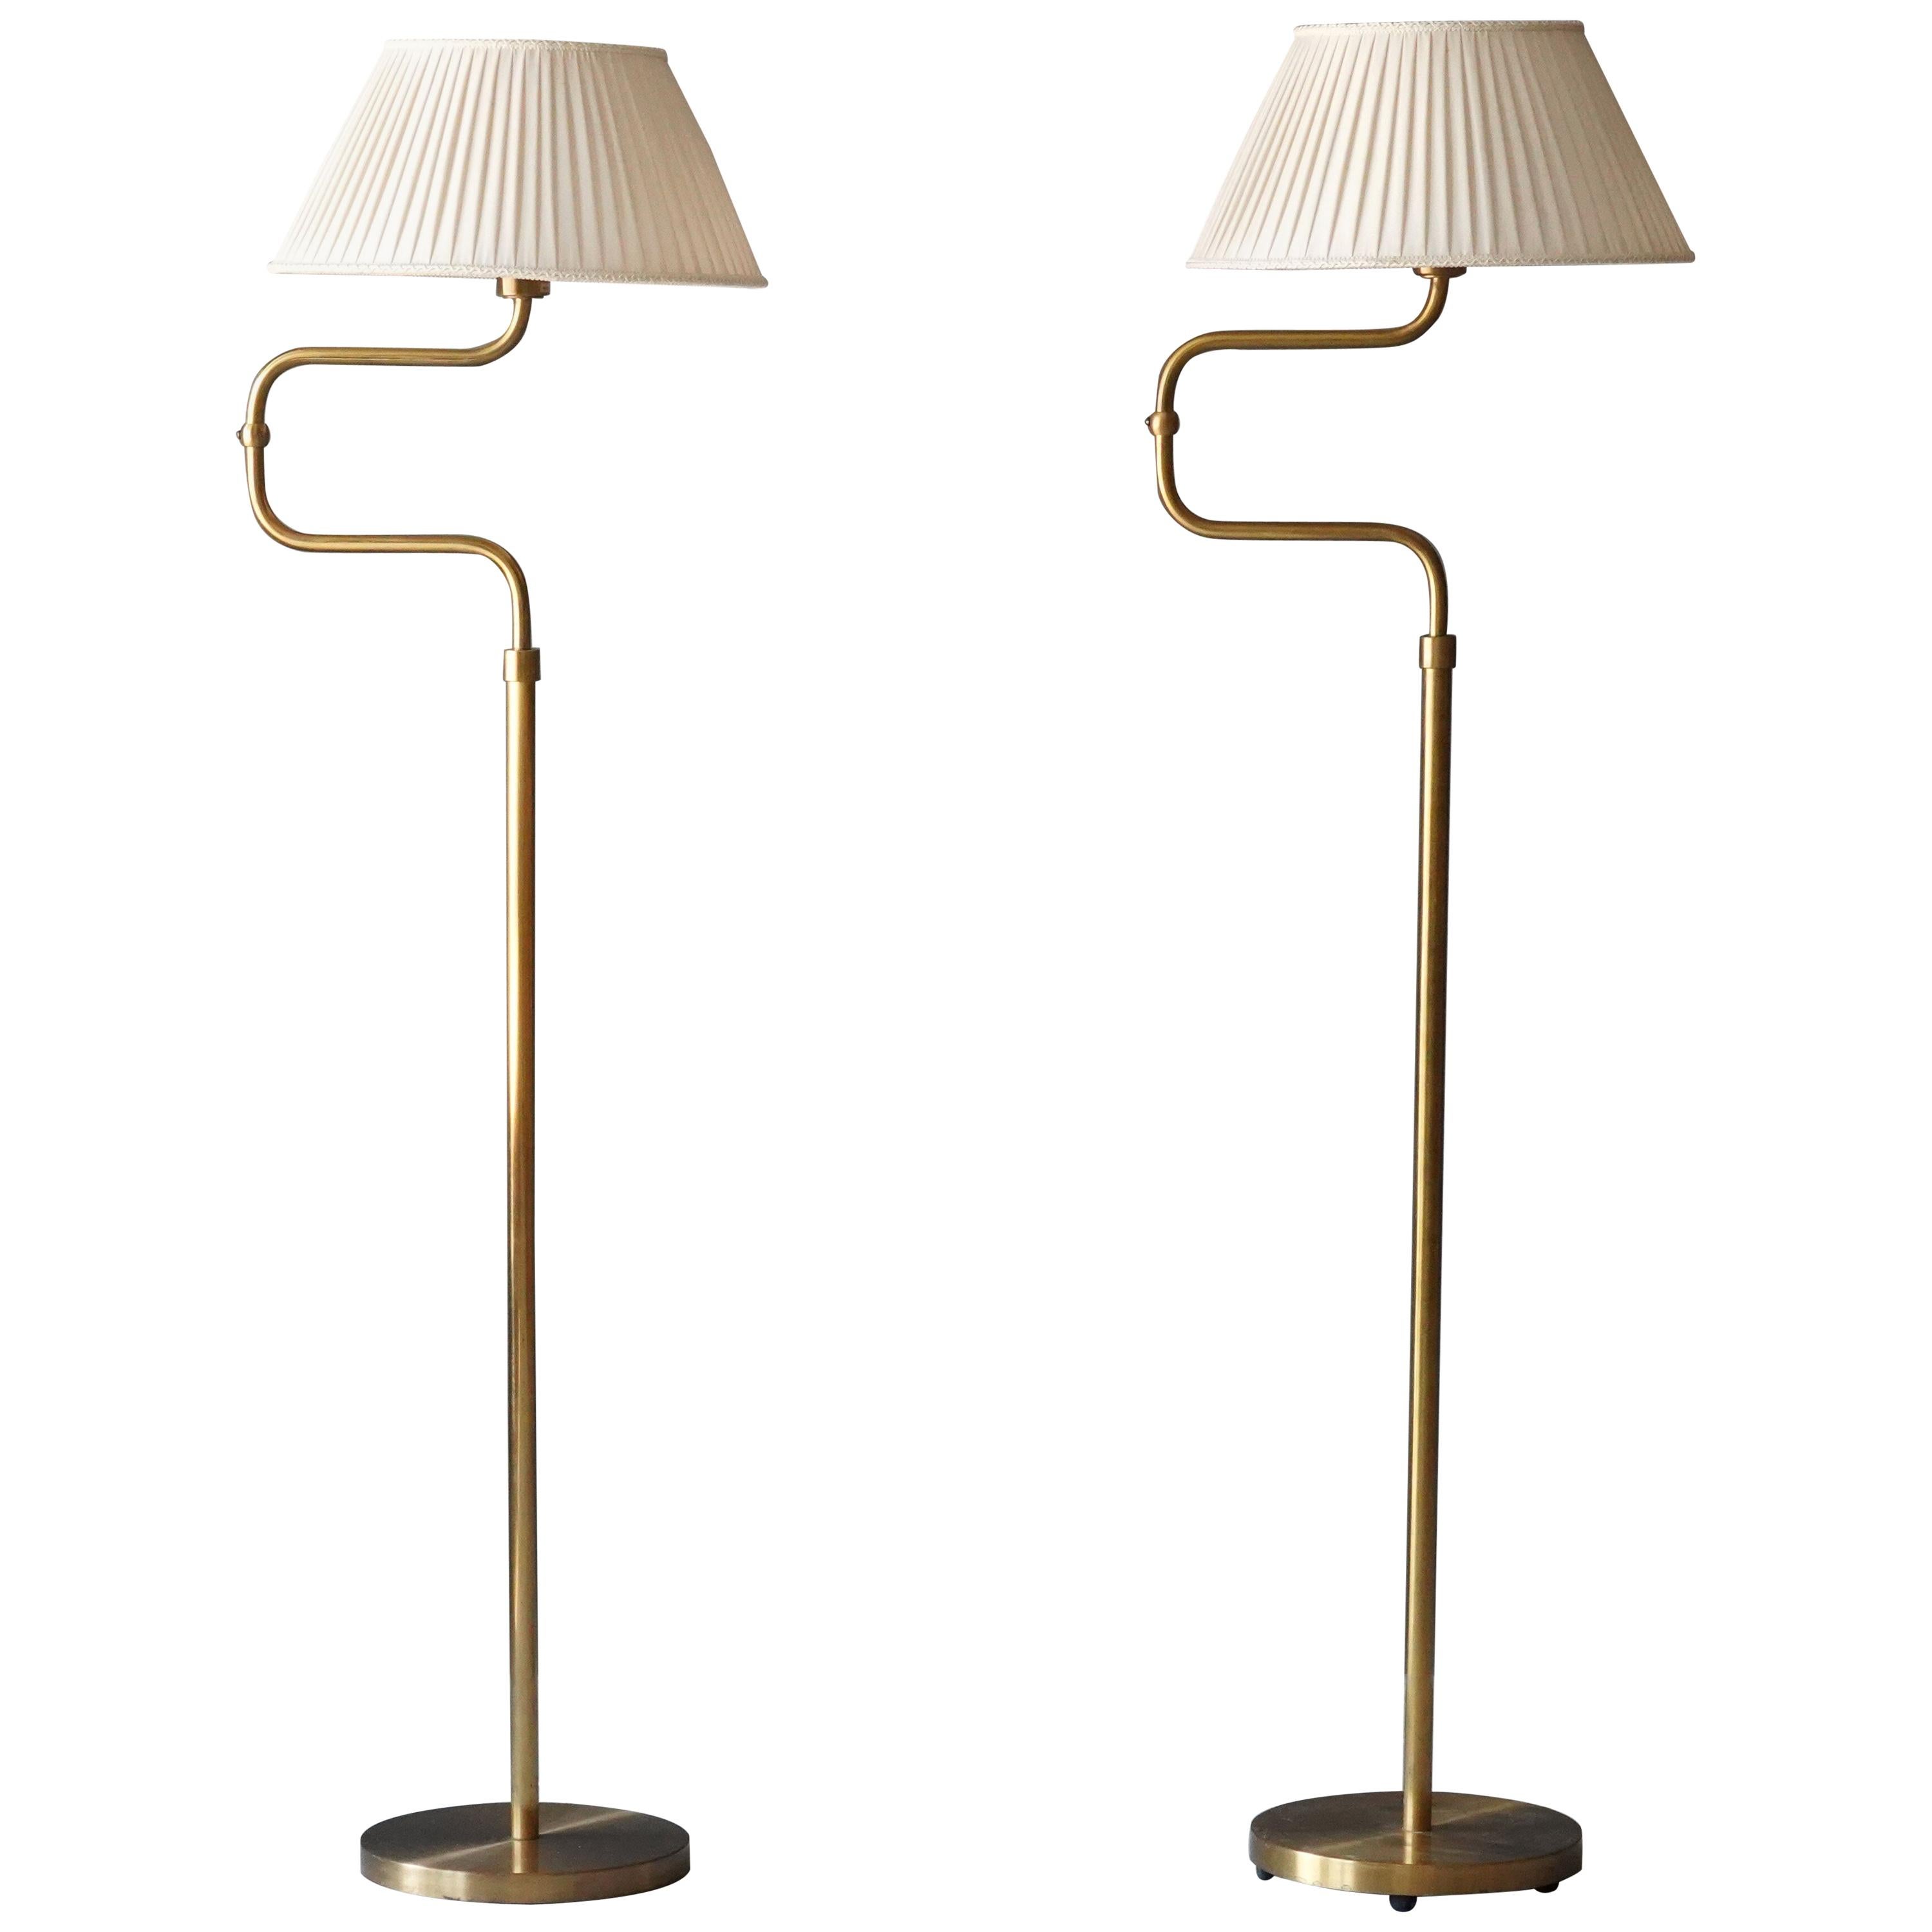 Nordiska Kompaniet, Adjustable Floor Lamps, Brass, White Fabric, Sweden, 1940s